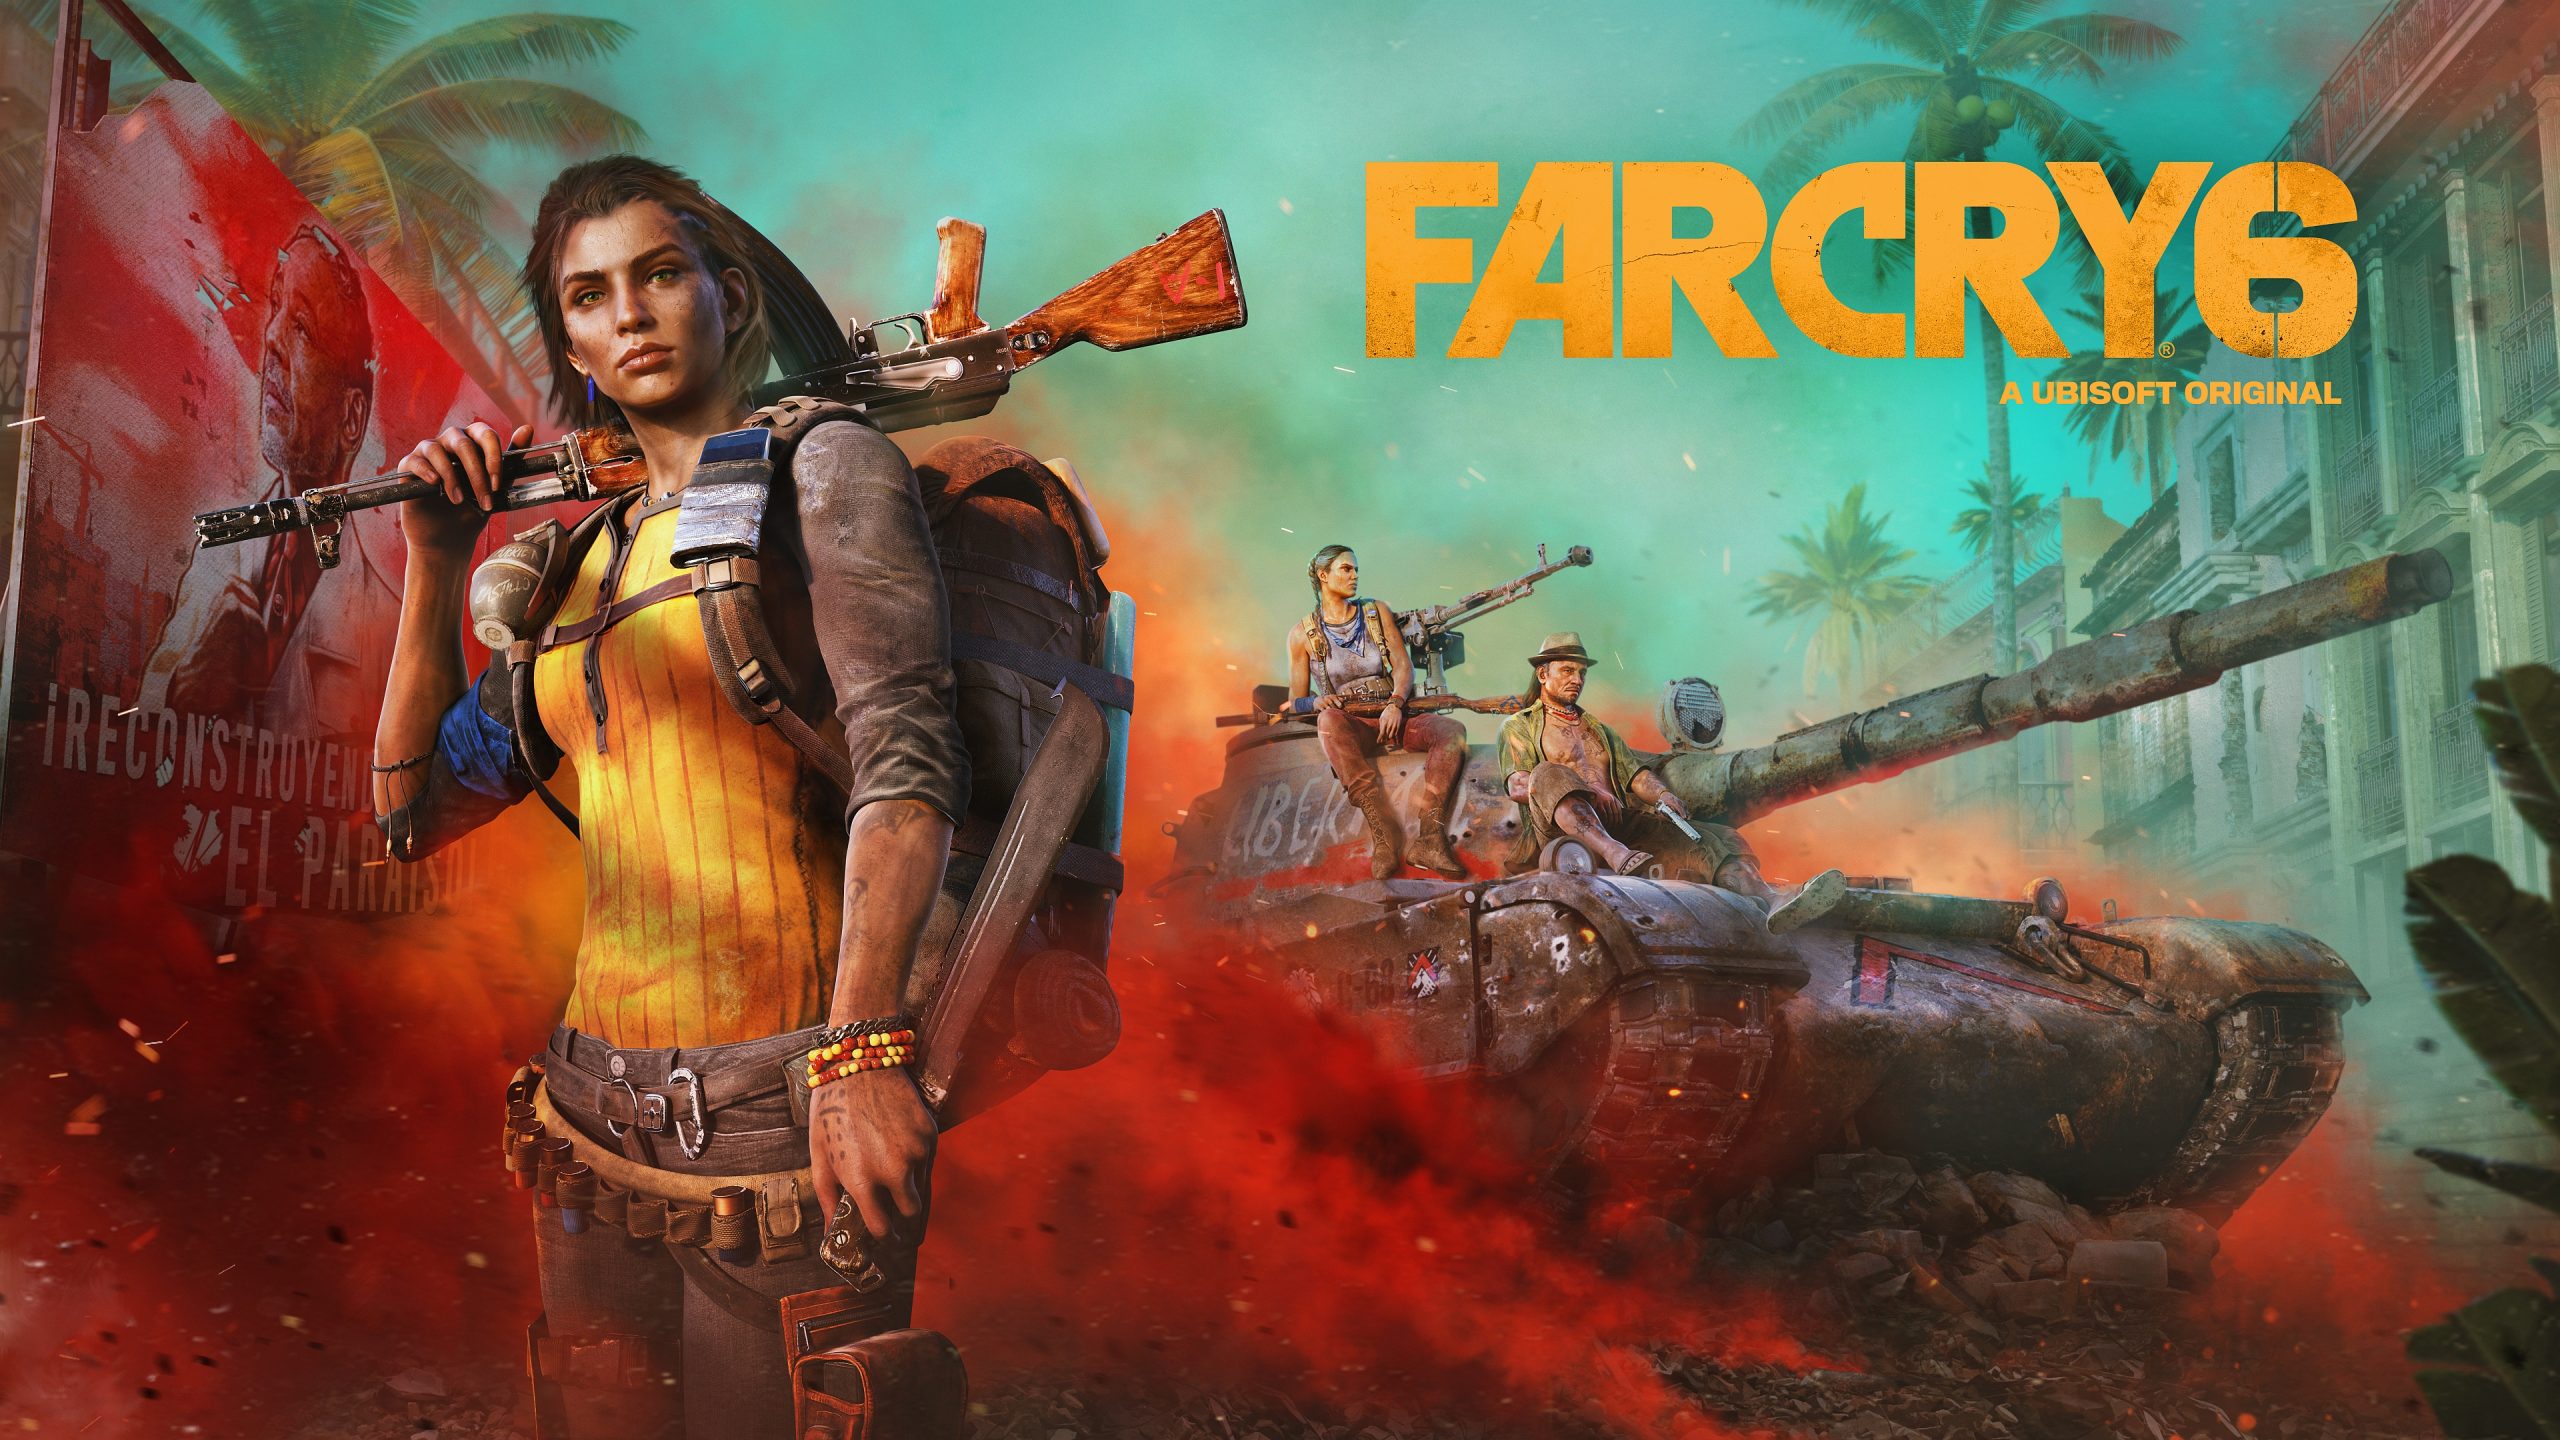 ภารกิจใหม่จากครอสโอเวอร์ Rambo ใน Far Cry 6 พร้อมให้เล่นฟรีแล้ววันนี้